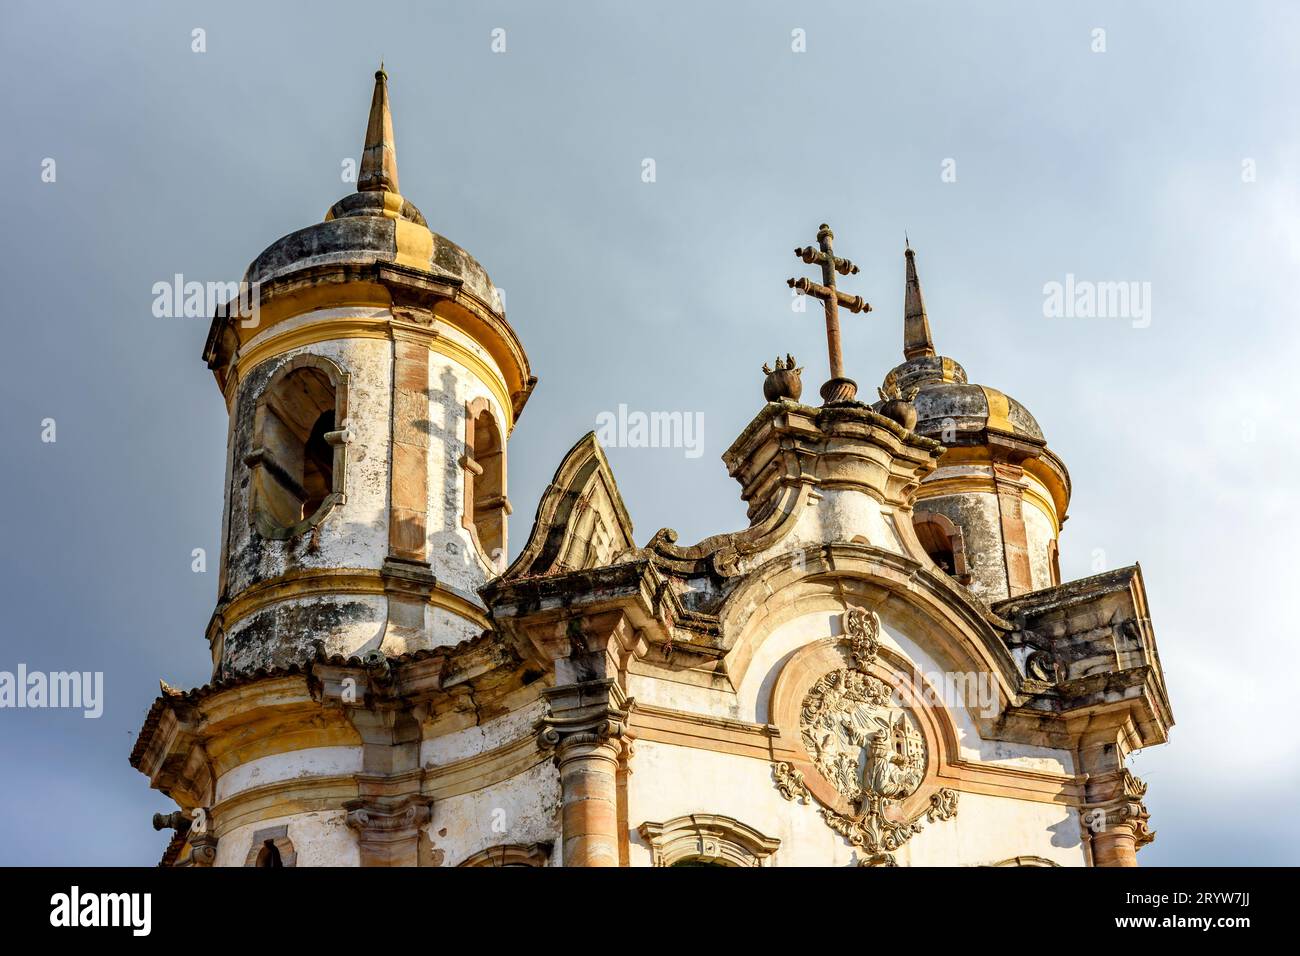 Dettaglio della facciata e delle torri di una storica chiesa barocca Foto Stock